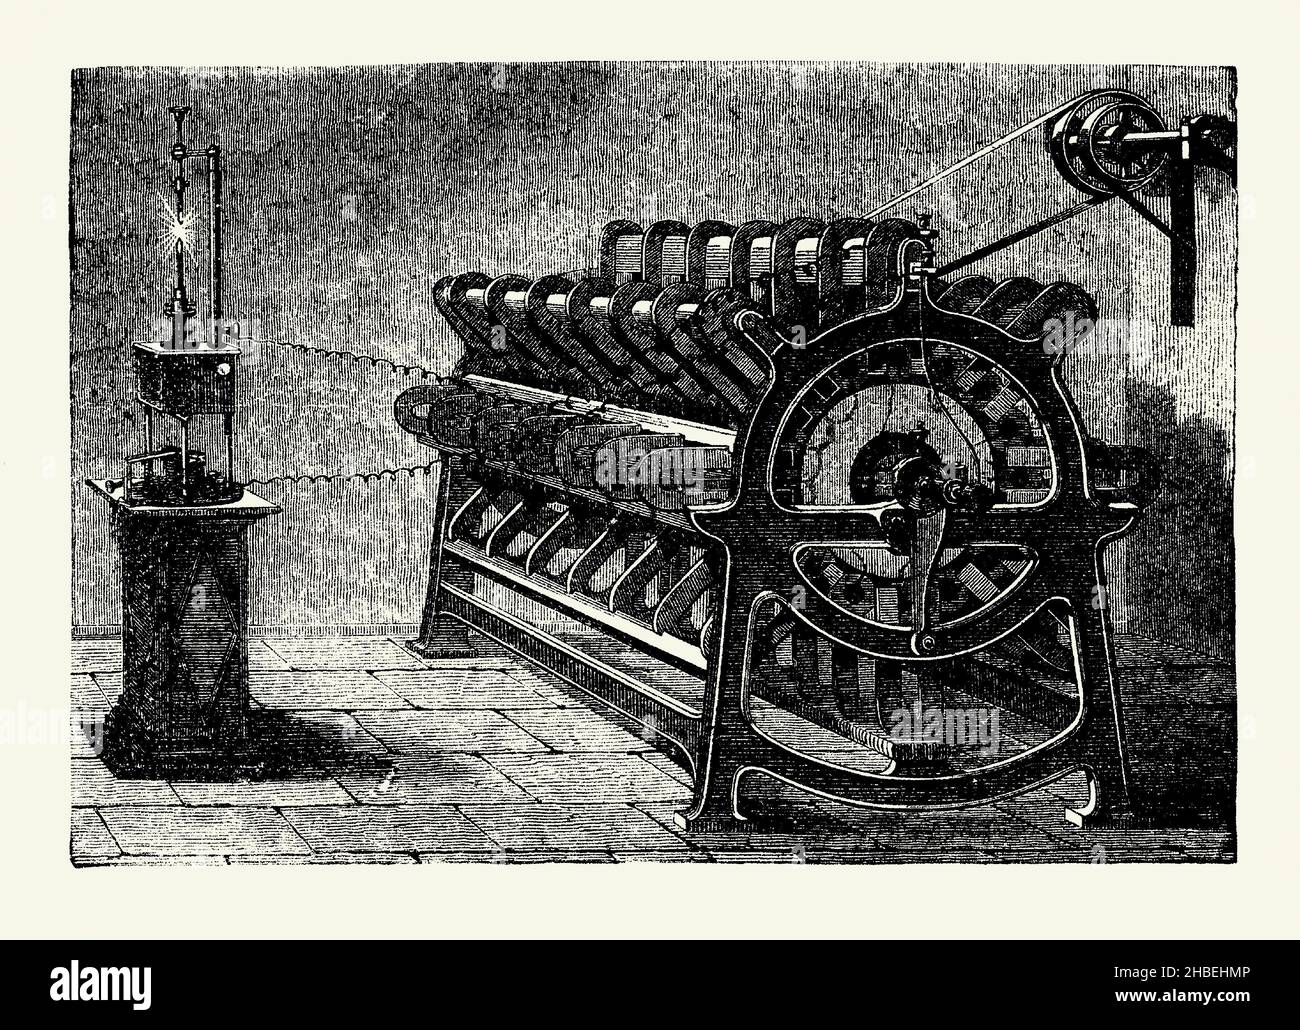 Eine alte Gravur einer Alliance Machine, ein magneto-elektrisches Gerät von 1870. Es stammt aus einem viktorianischen Buch der 1890s über Entdeckungen und Erfindungen während des 1800s. Hier erzeugen die Spulen und Magnete der Bandmaschine einen Lichtbogen. Der belgische Elektroingenieur Floris Nollet (1794–1853) wurde vor allem für die Erzeugung von Lichtbogenbeleuchtung bekannt und gründete zur Herstellung seiner Maschinen das britisch-französische Unternehmen Société de l'Alliance. Ein Magneto ist ein elektrischer Generator, der mit Permanentmagneten regelmäßige Impulse von Wechselstrom erzeugt. Stockfoto